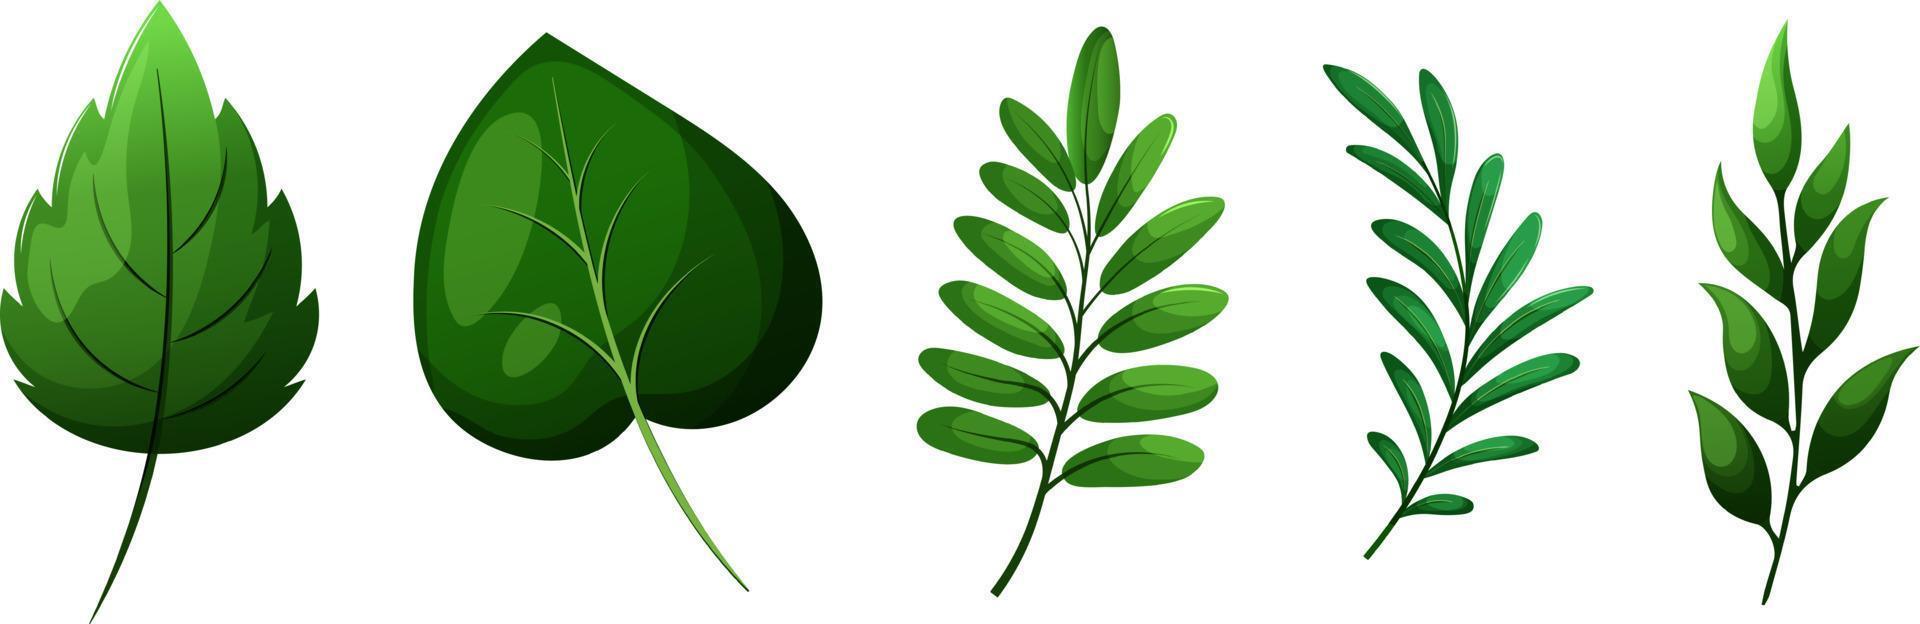 conjunto de hojas y ramas verdes de dibujos animados sobre fondo transparente vector